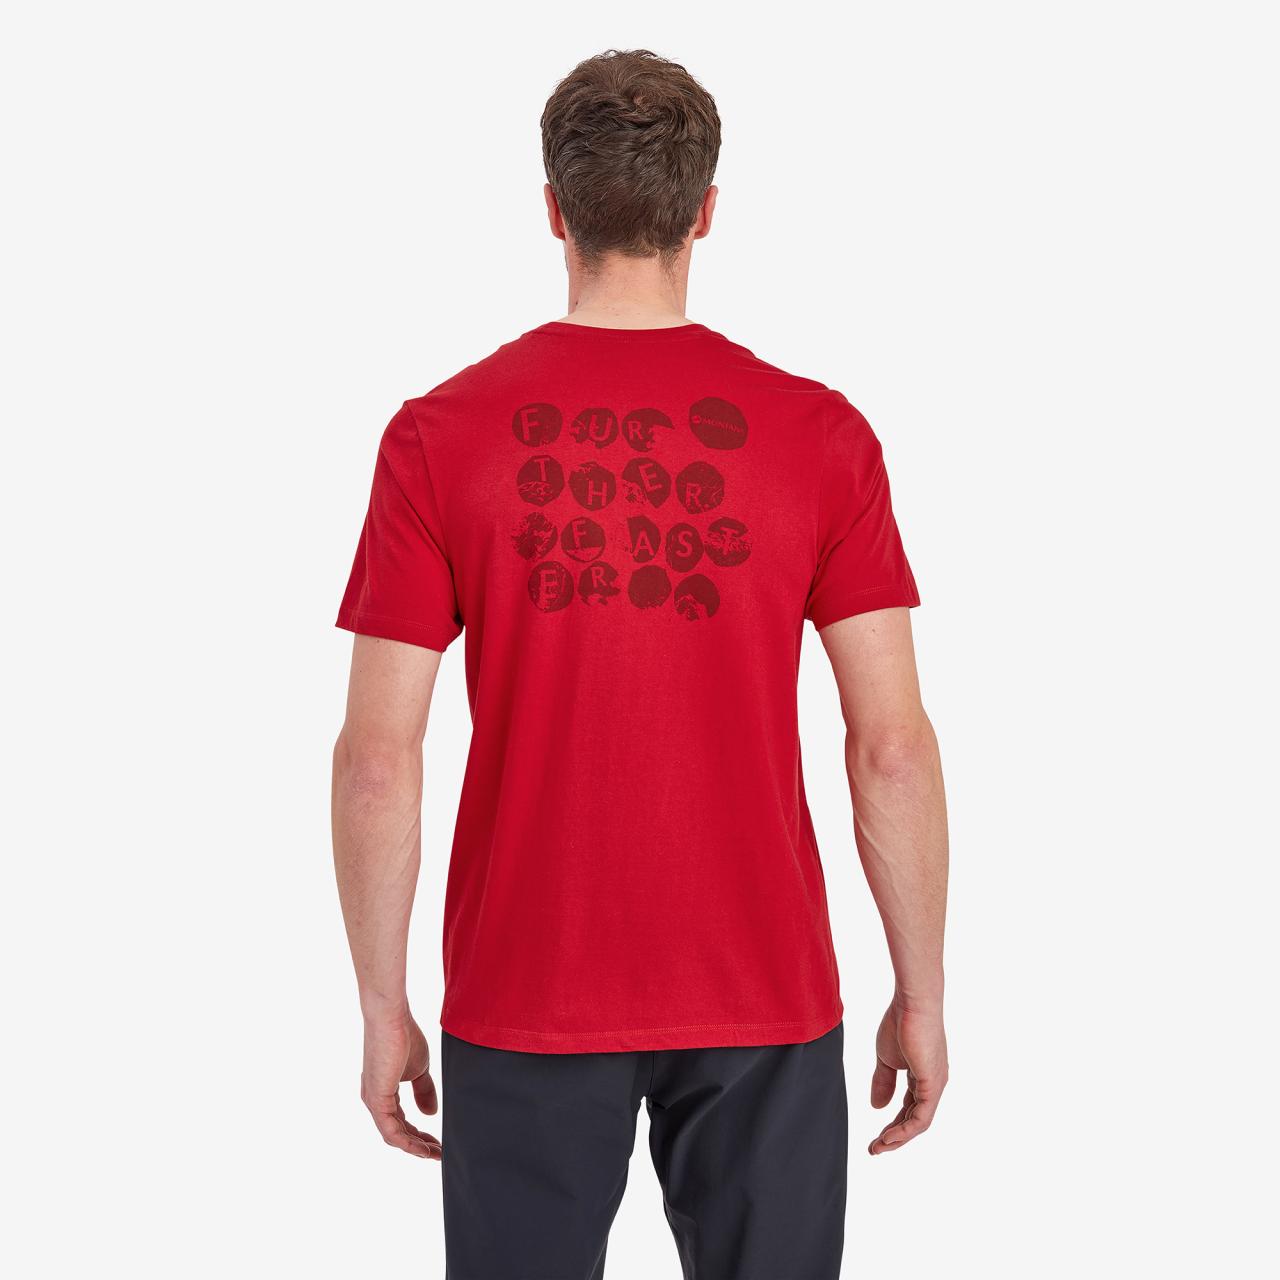 TRANSPOSE T-SHIRT-ACER RED-M pánská triko tmavě červené